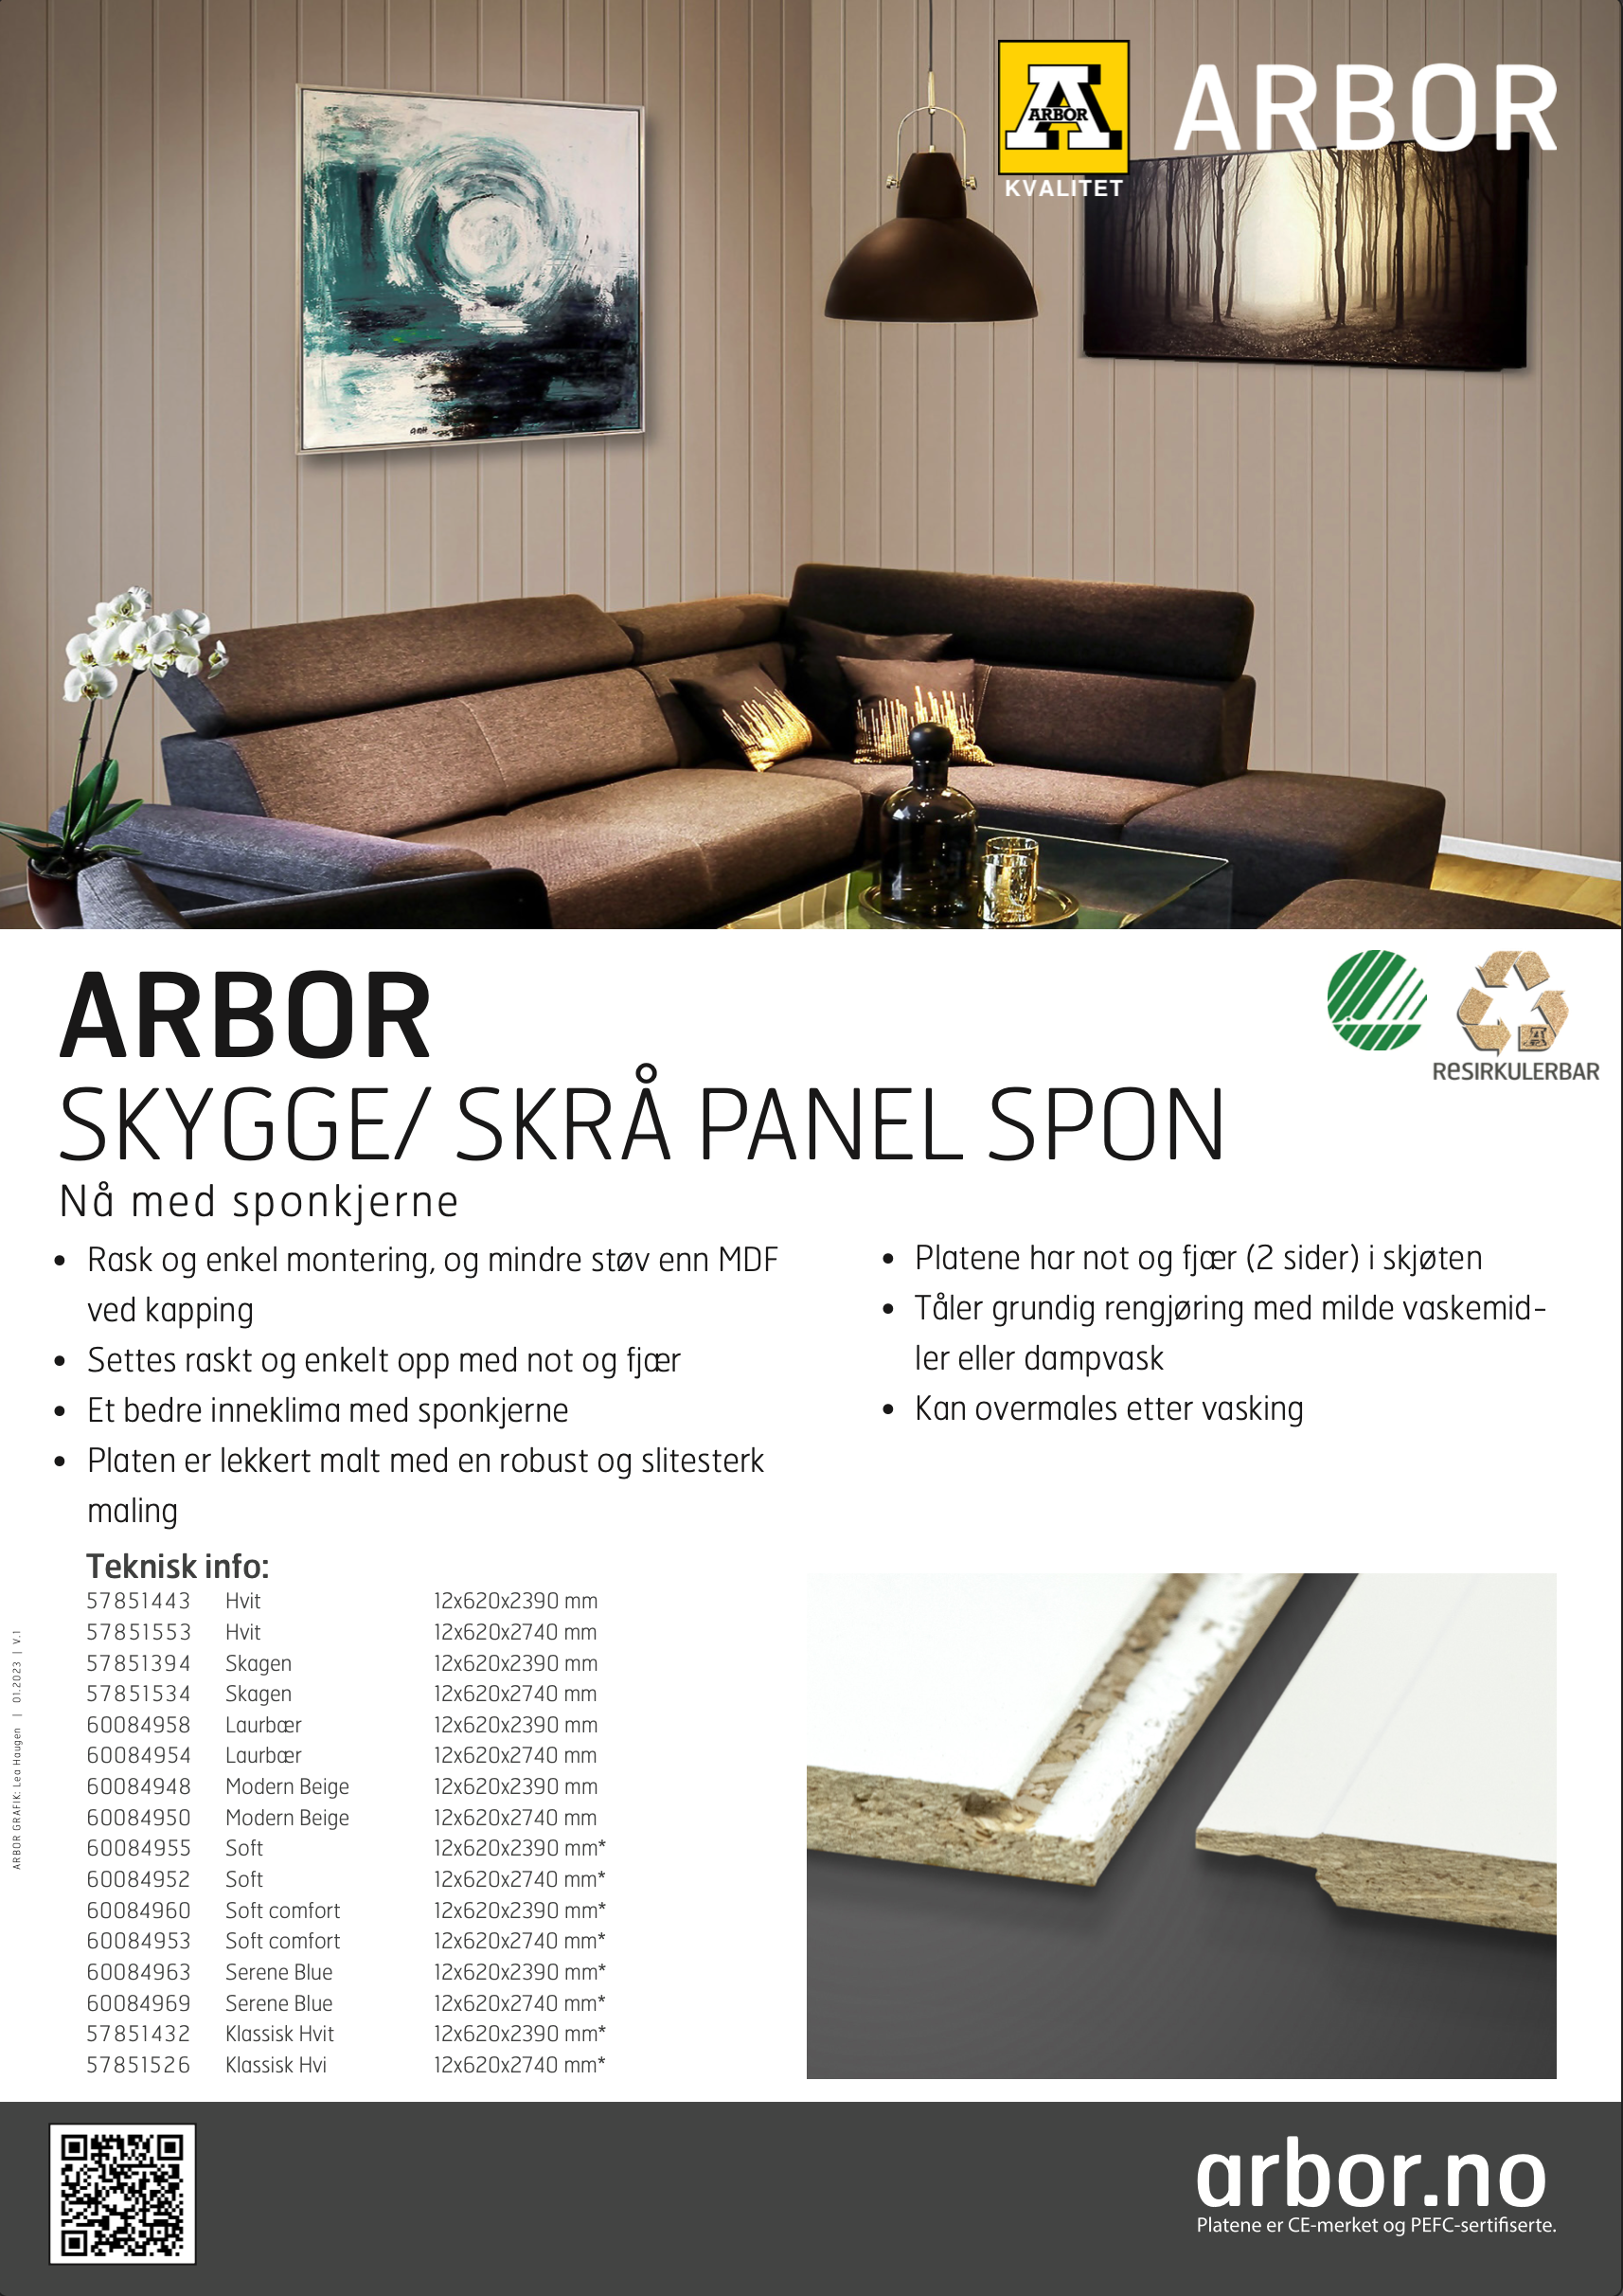 infoplakat for Arbor skygge/skrå panel i spon